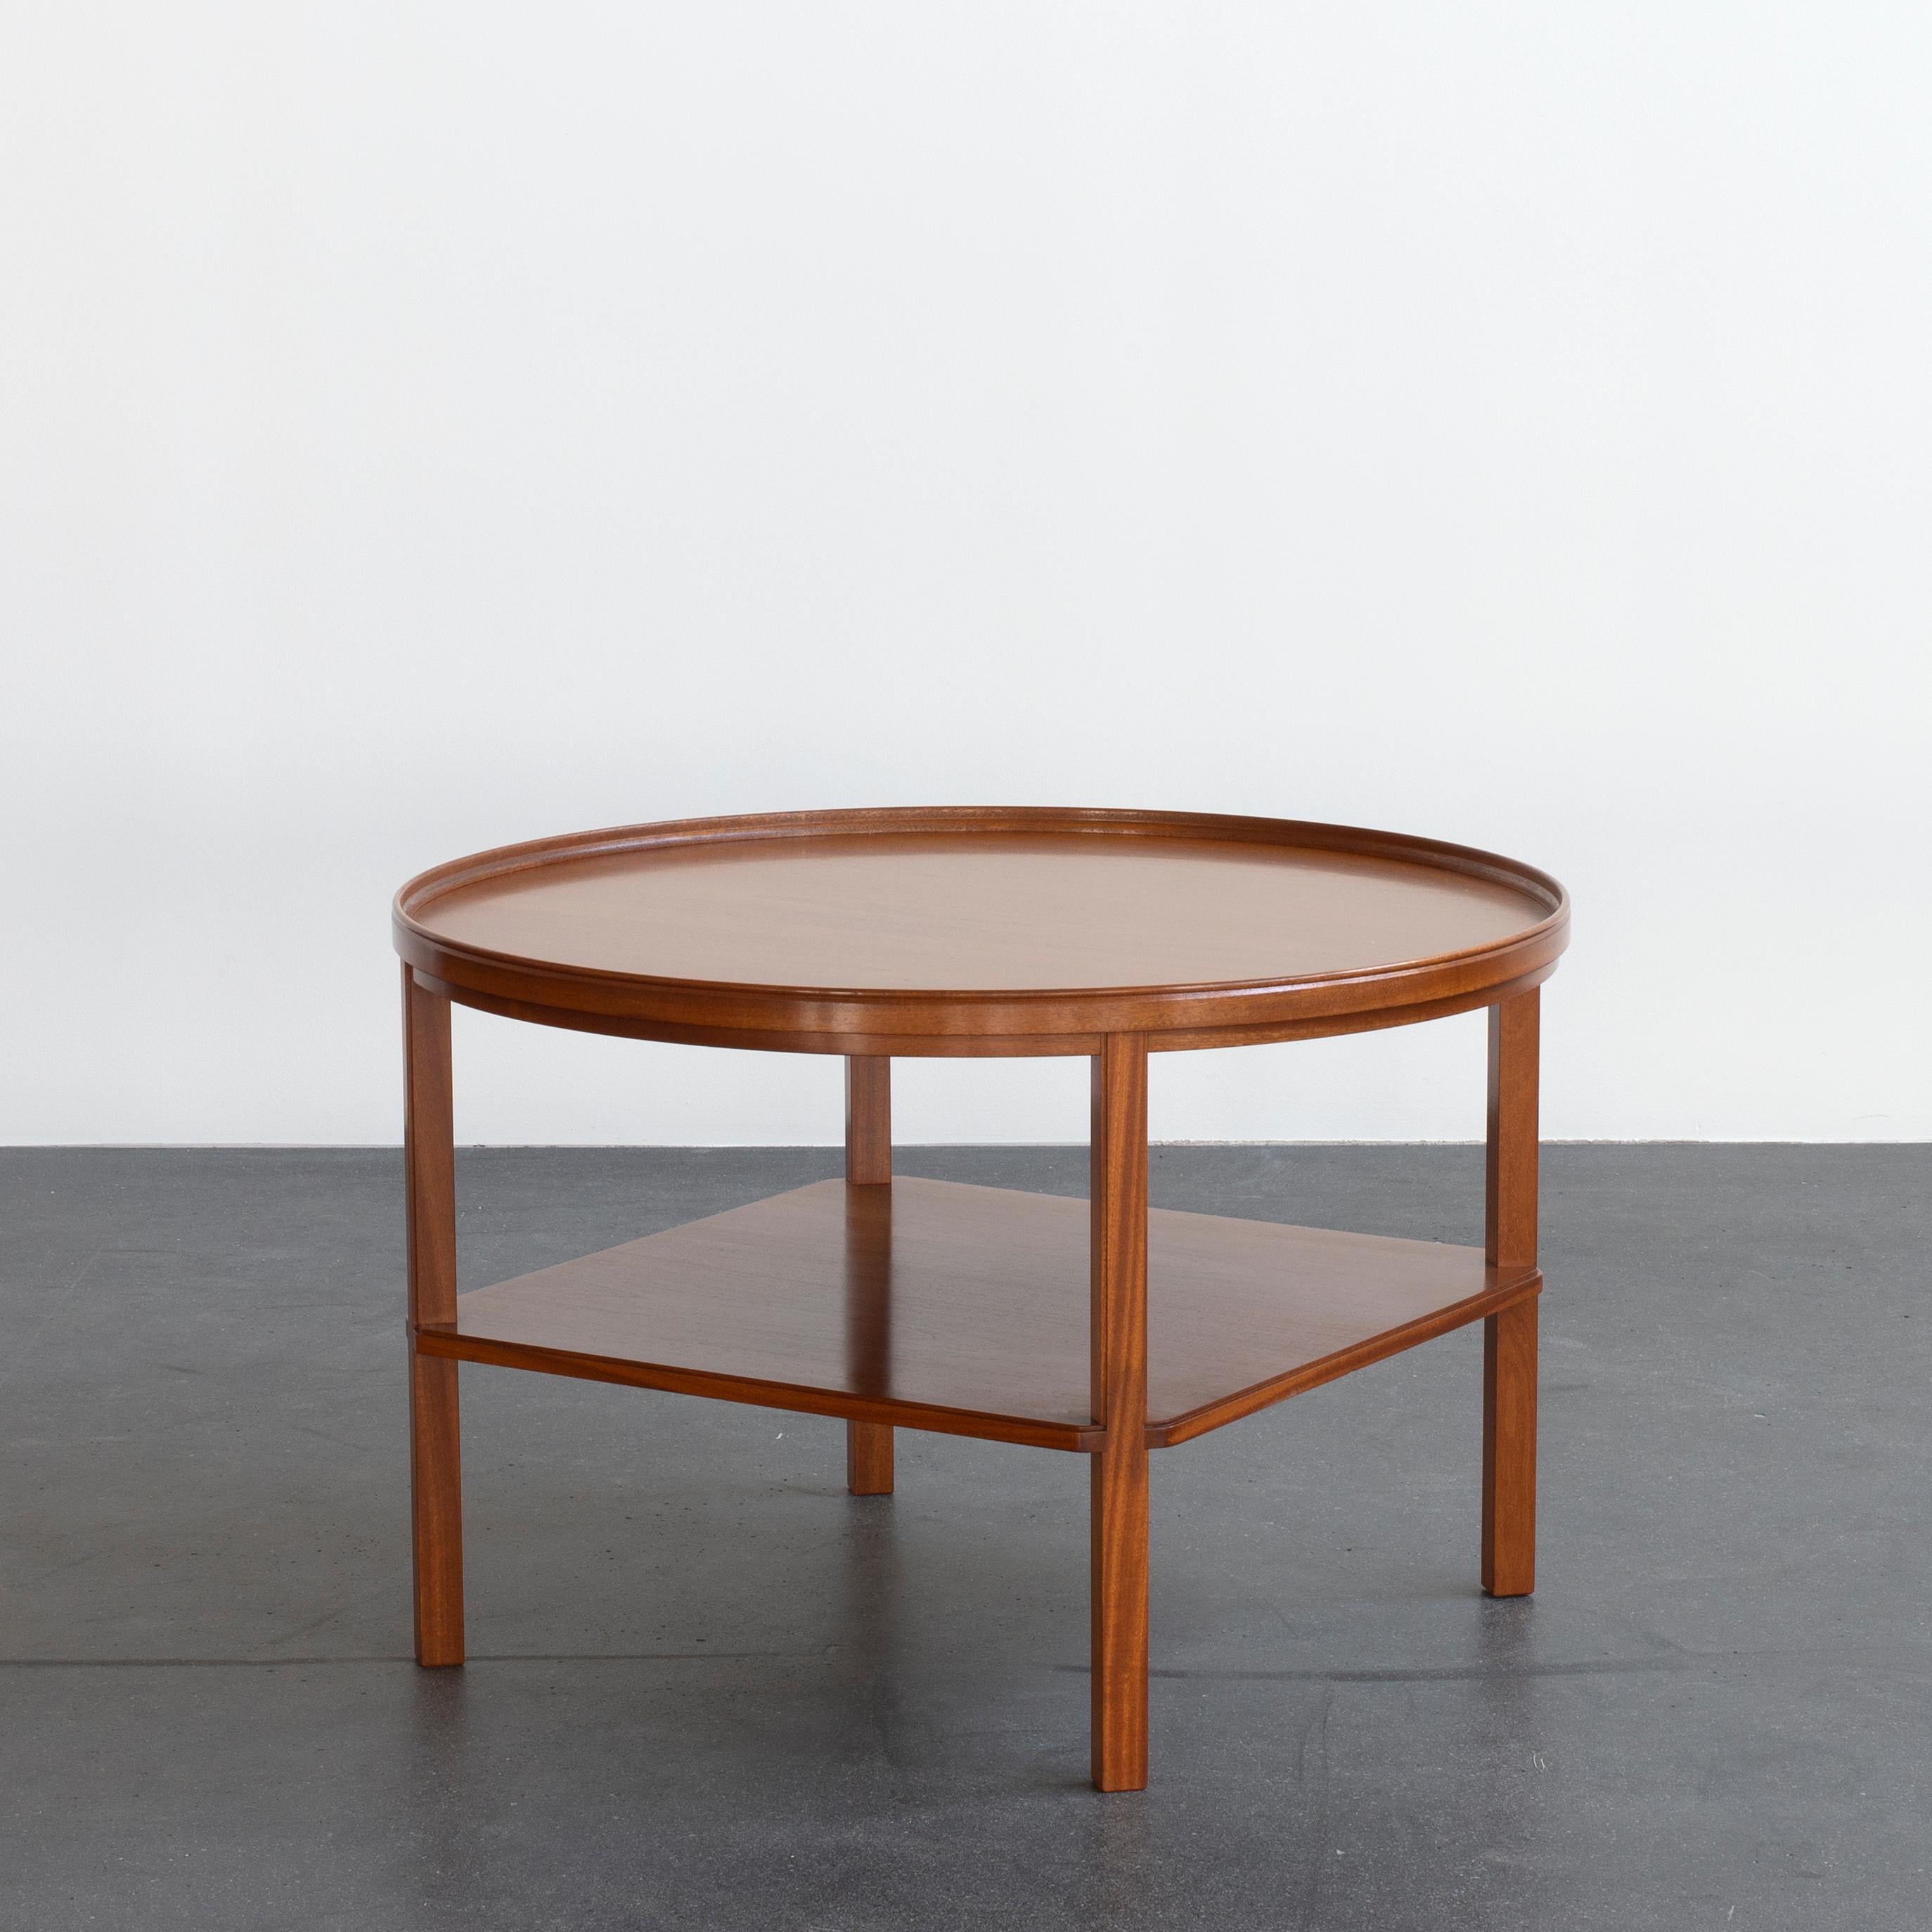 Kaare Klint coffee table in mahogany. Executed by Rud. Rasmussen.

Underside with manufacturer's paper label RUD. RASMUSSENS/SNEDKERIER//KØBENHAVN/DANMARK